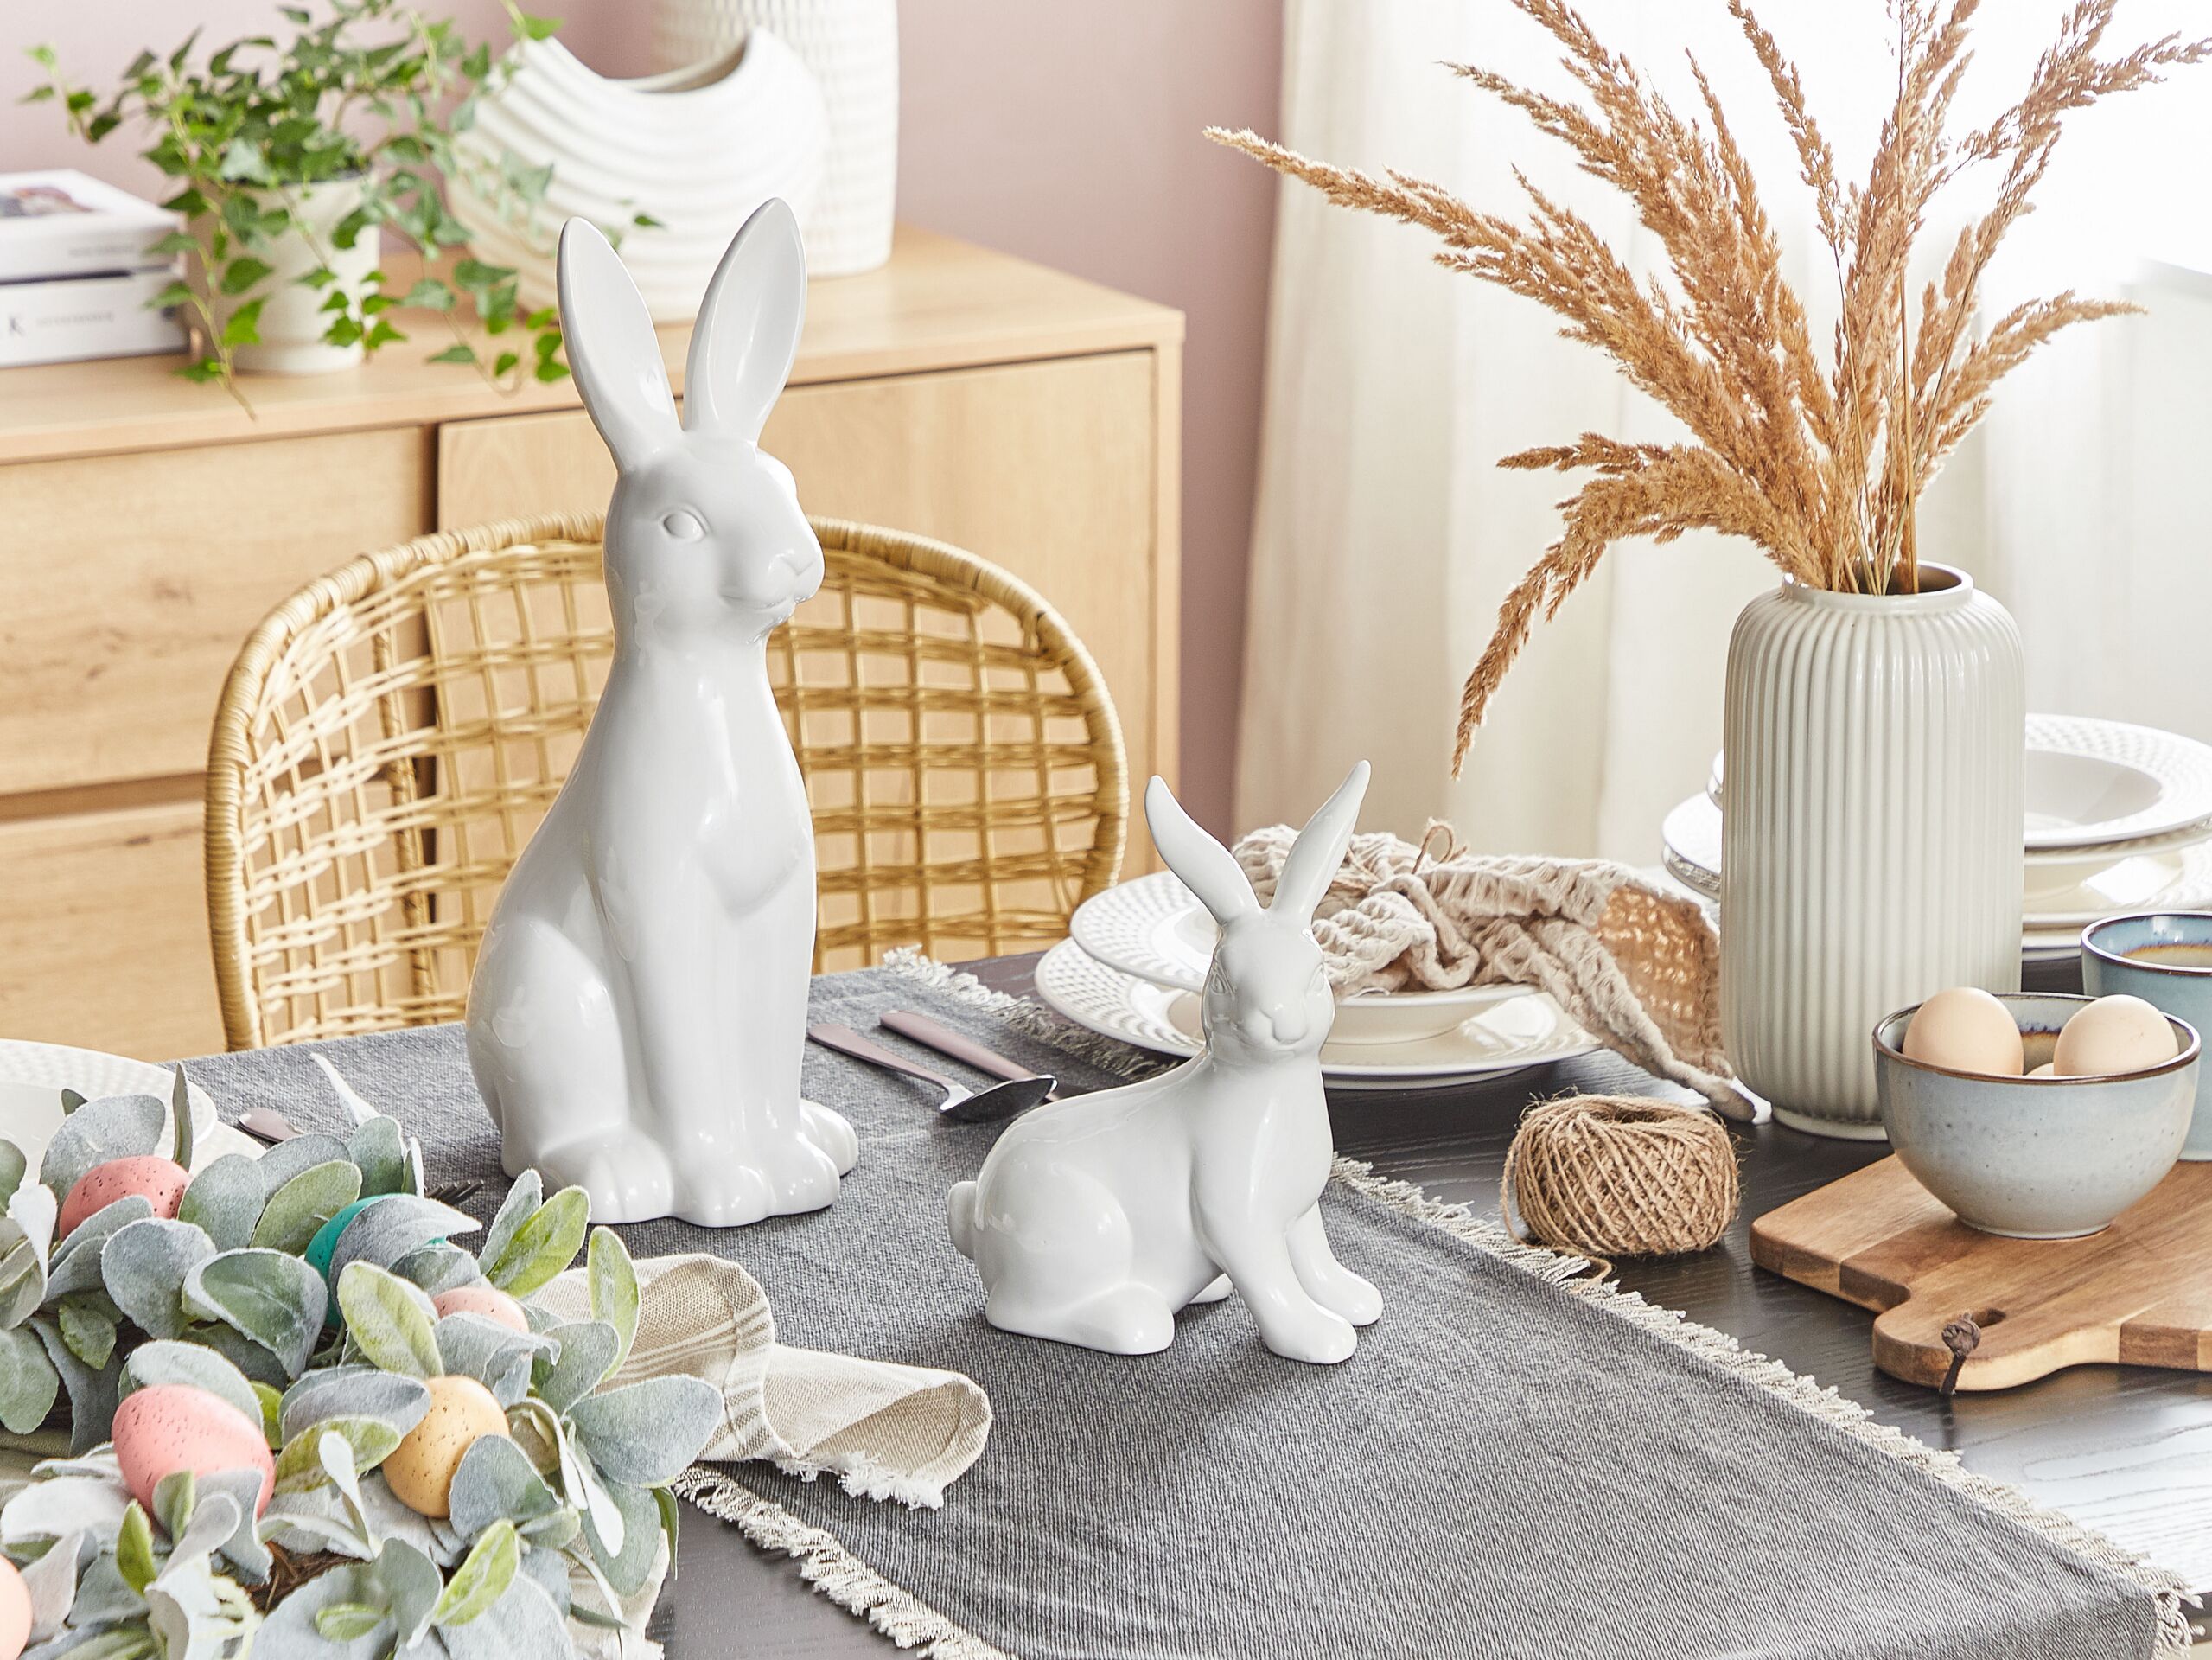 Figura decorativa com forma de coelho em cerâmica branca 21 cm MORIUEX